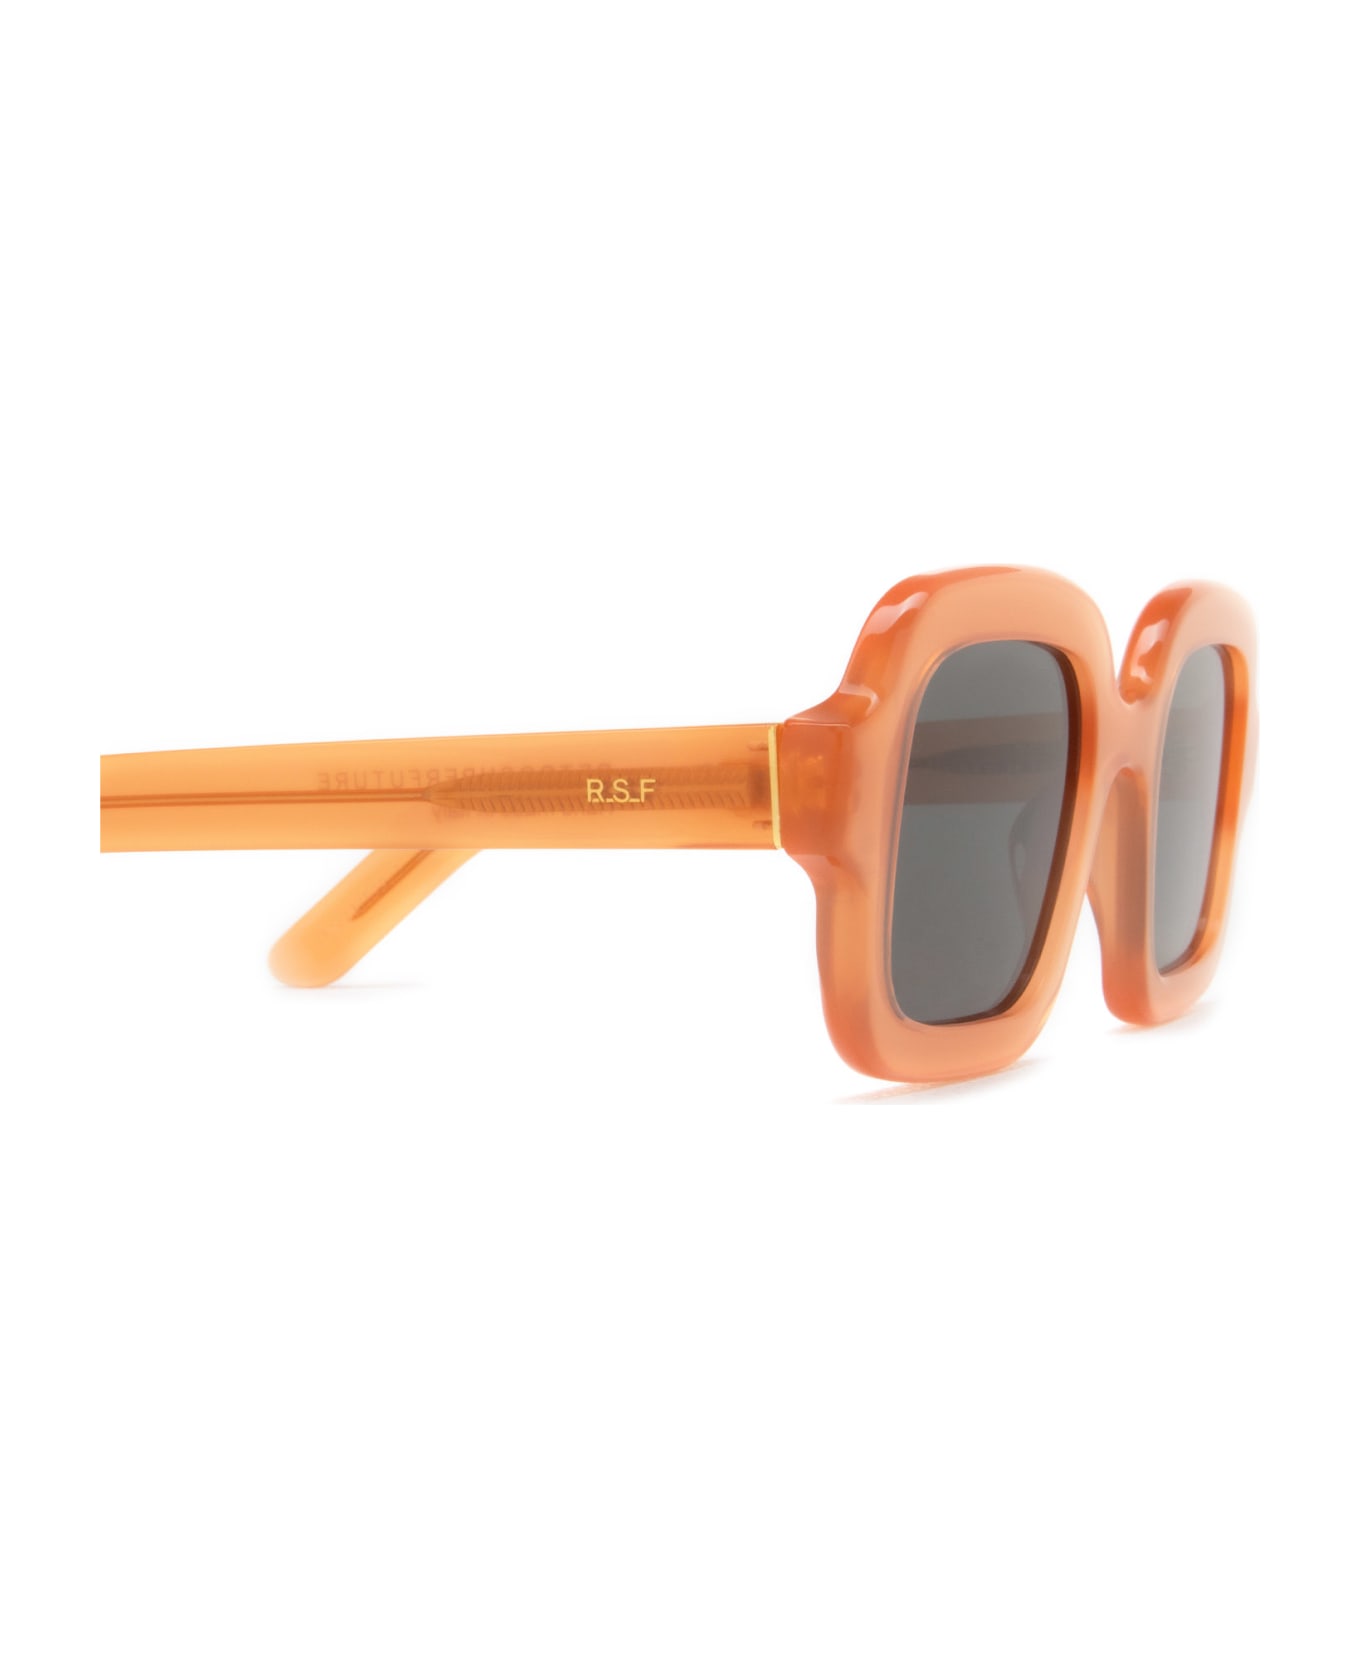 RETROSUPERFUTURE Benz Rusty Sunglasses - Rusty サングラス